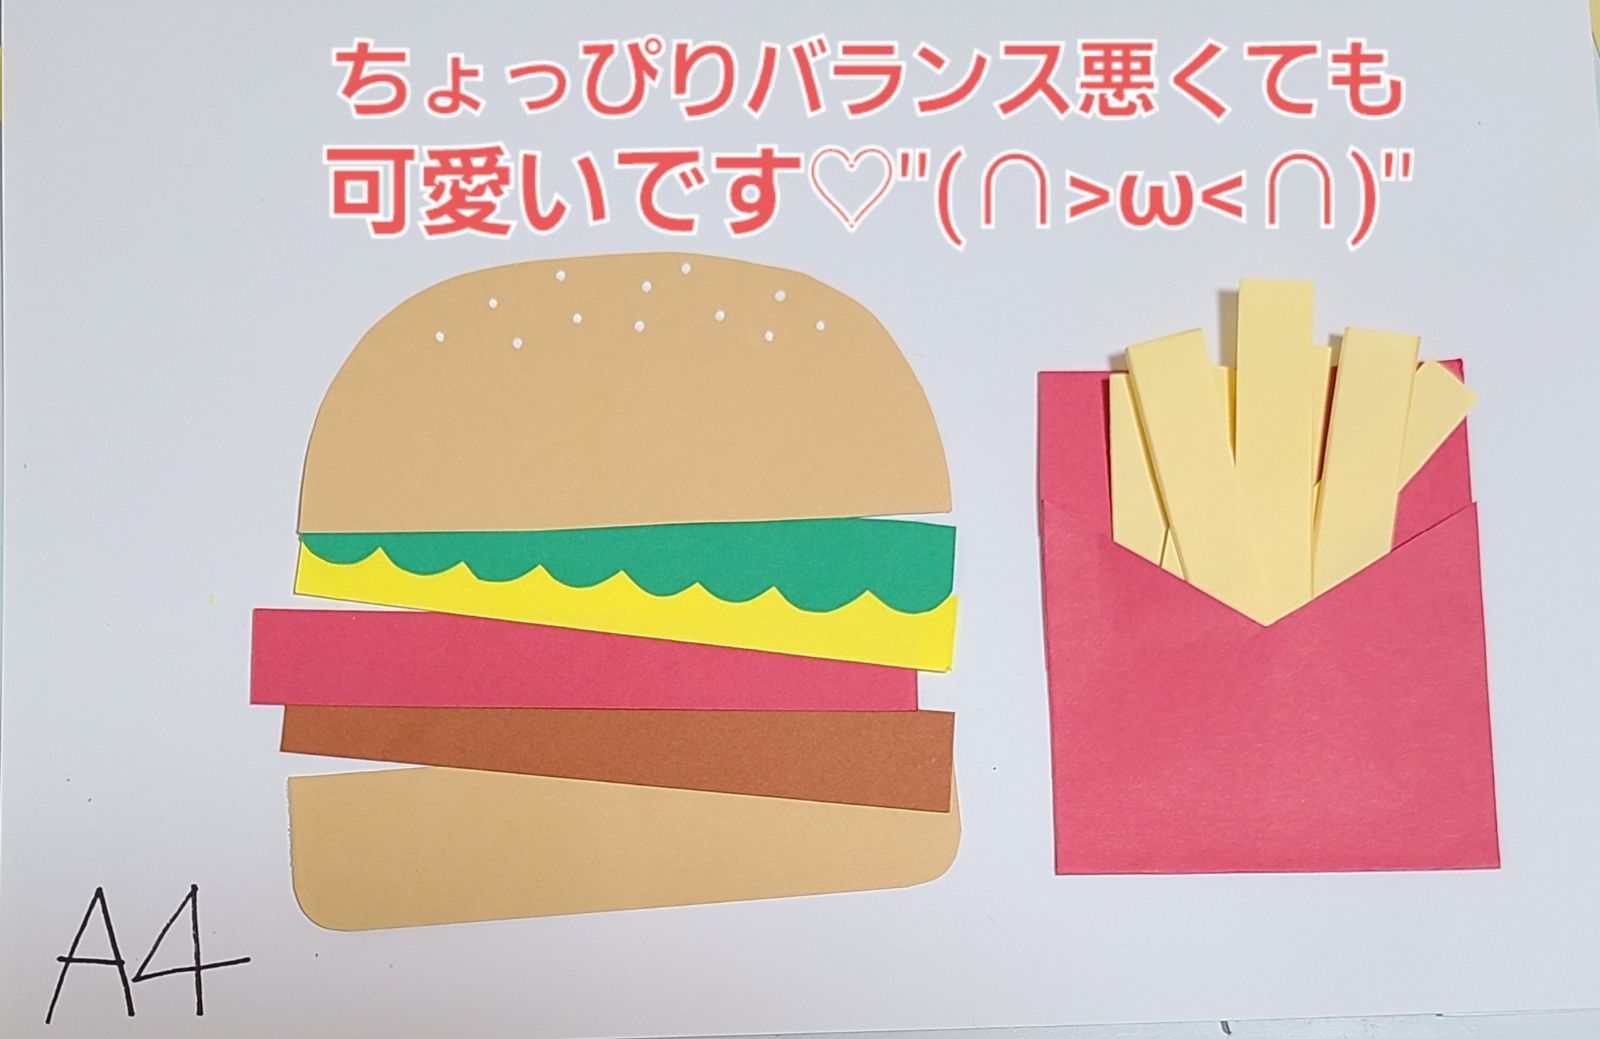 おすすめ】ハンバーガーとポテト製作キット8セット 保育園 幼稚園